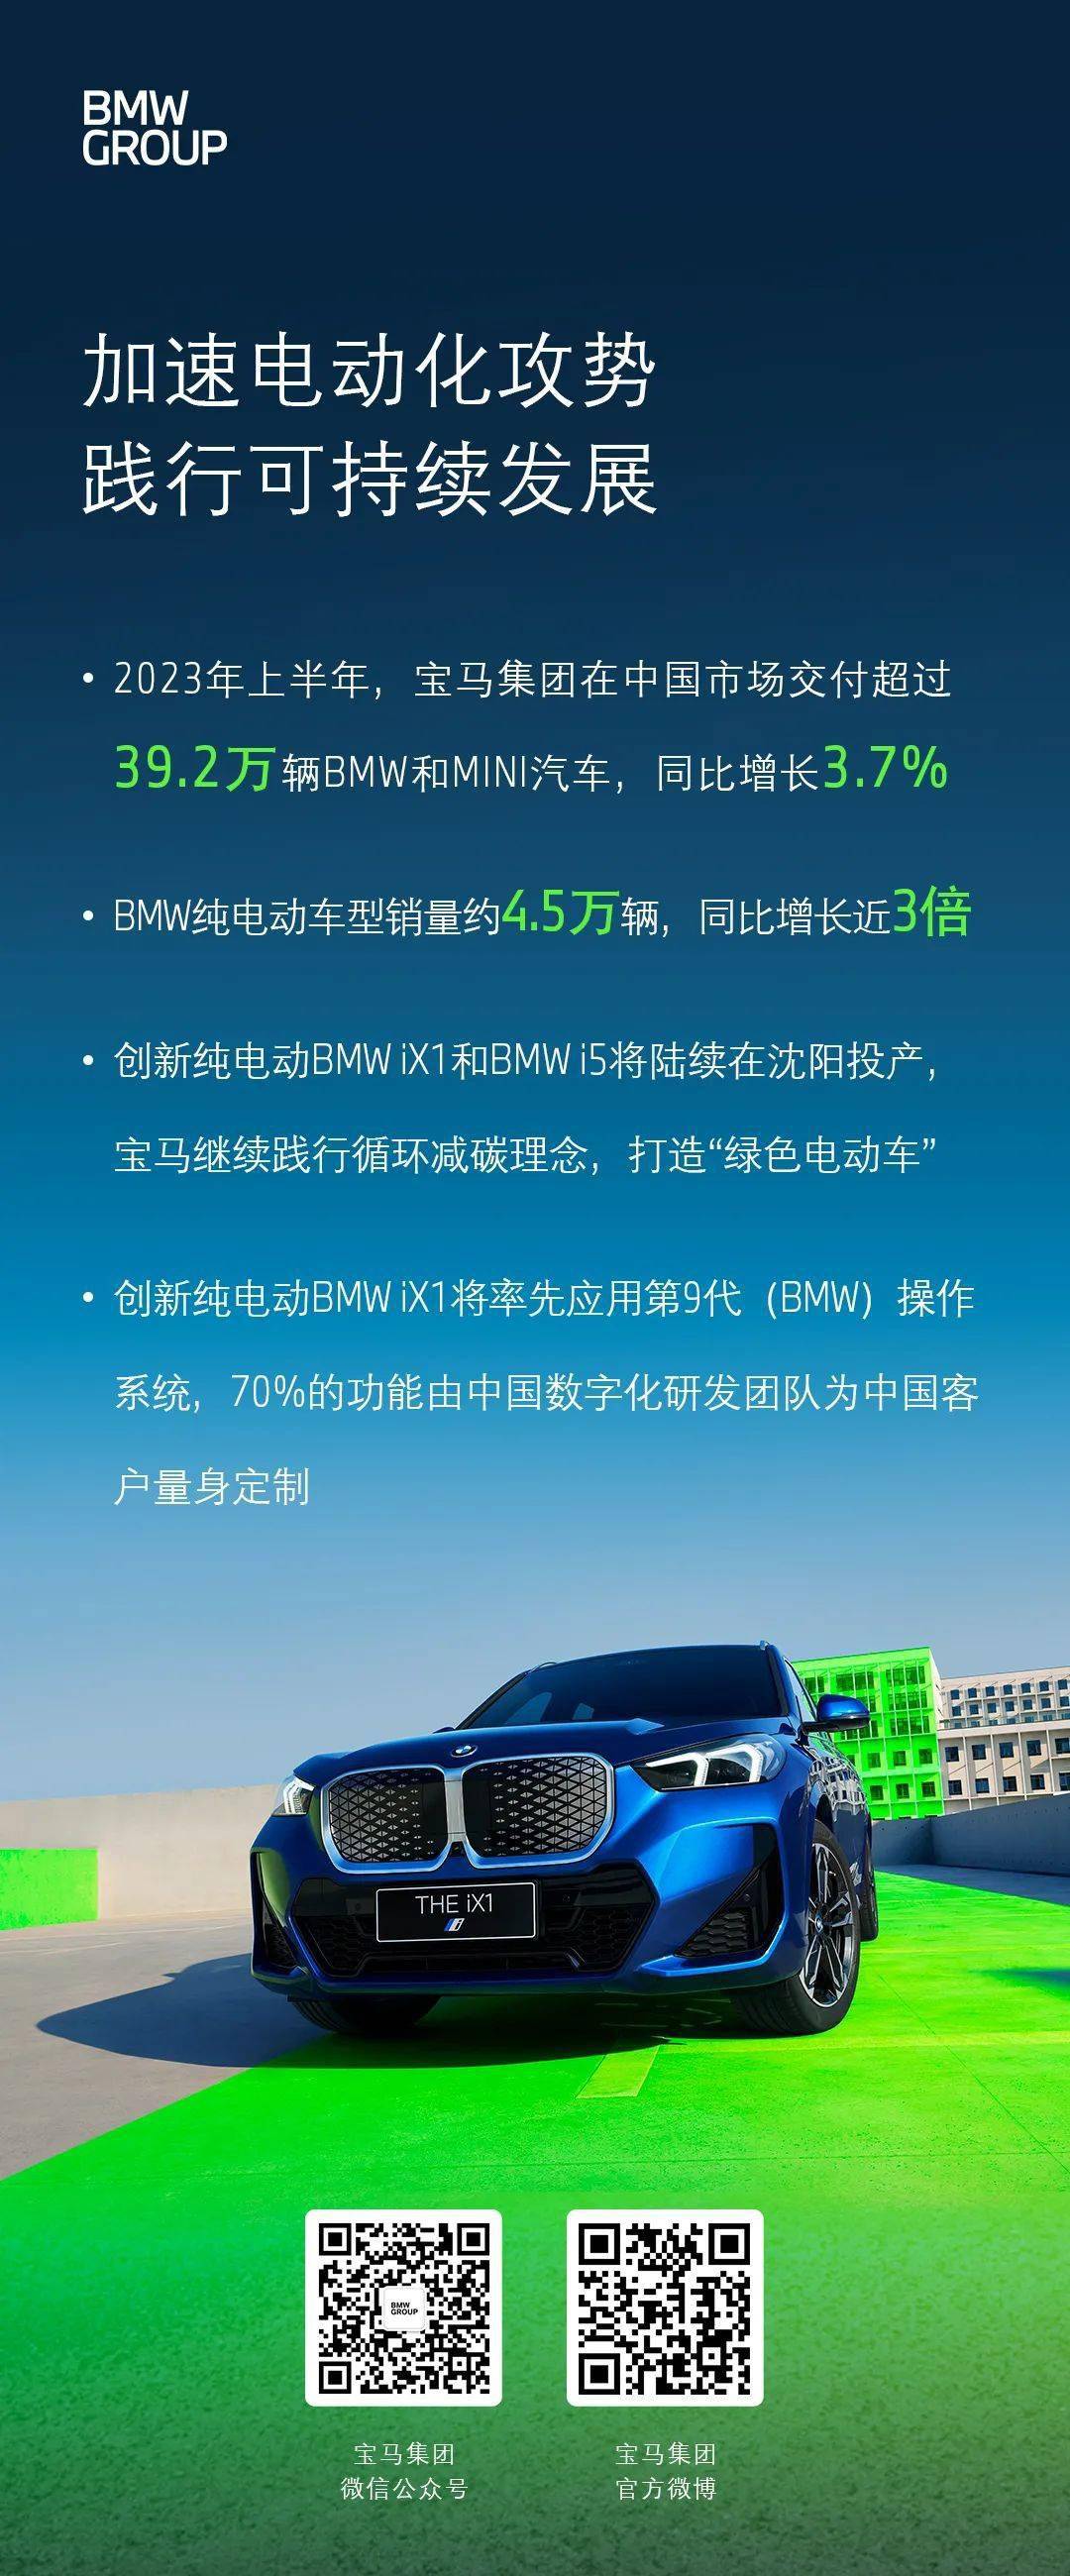 宝马纯电动车型上半年在中国销售约4.5万辆 主要包括i3、iX3、i4、i7和iX